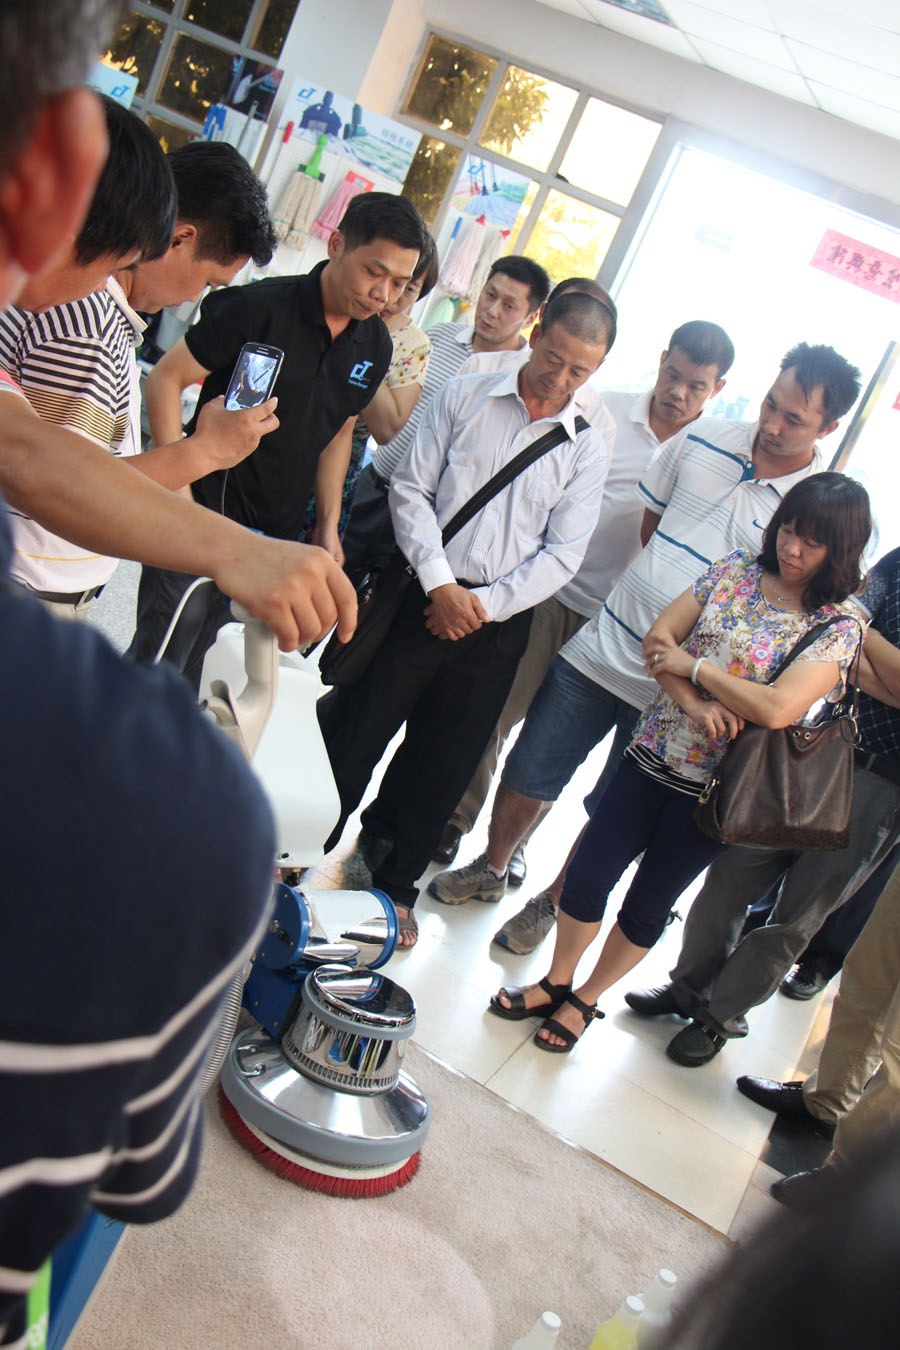 佛山健力与广州市城市管理举办 - 保洁员 高级 培训班圆满结束!